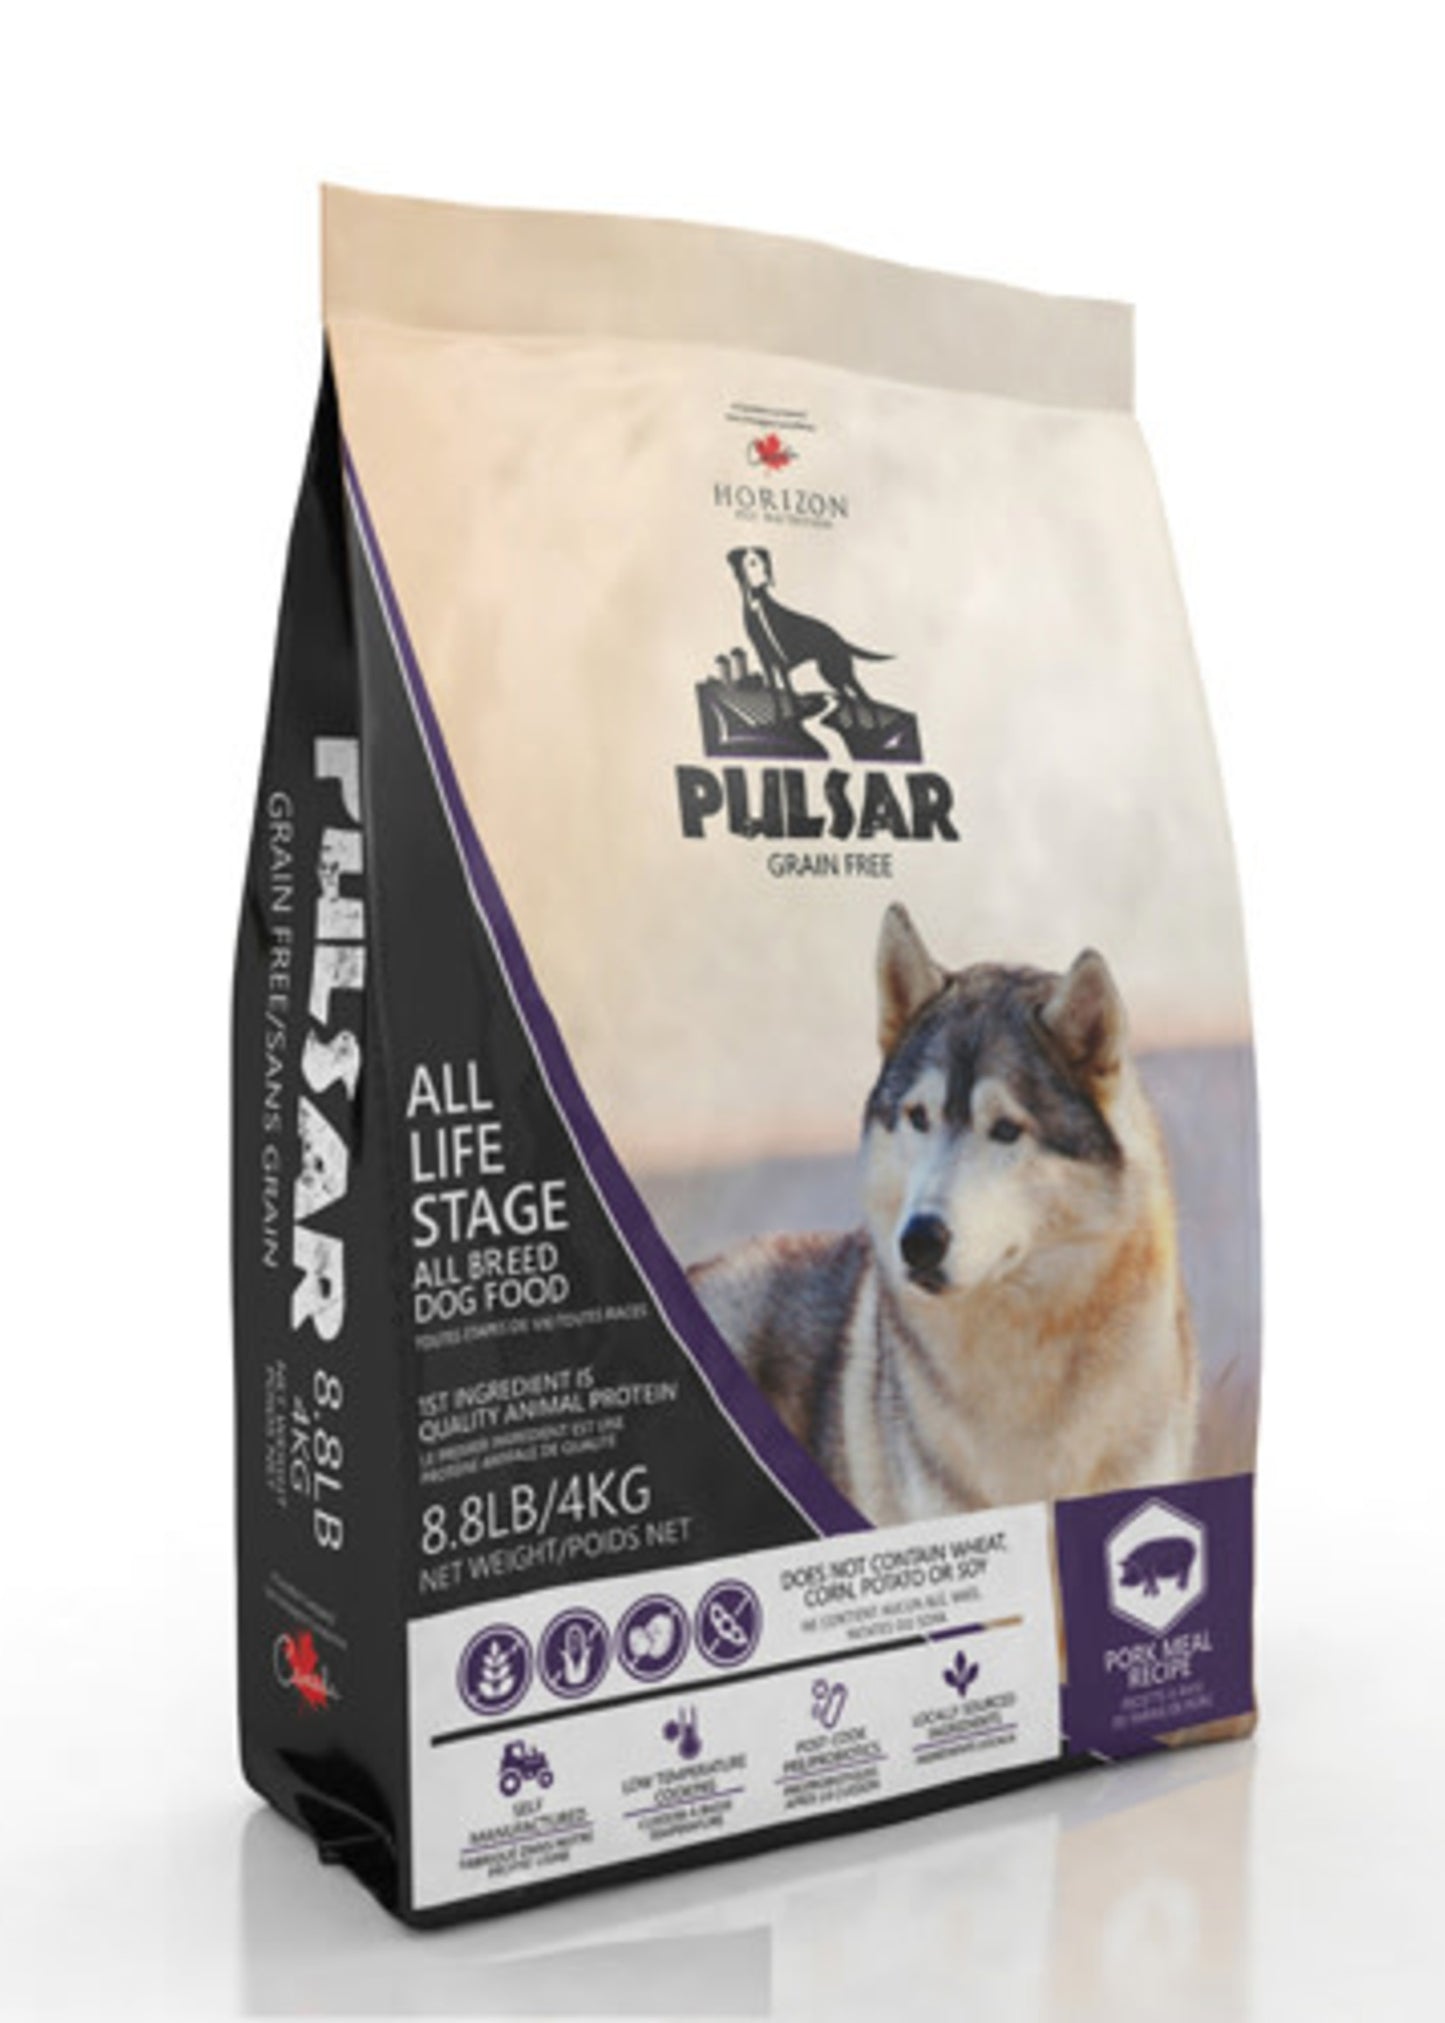 Horizon Pulsar Pork Formula Dog Food 4kg